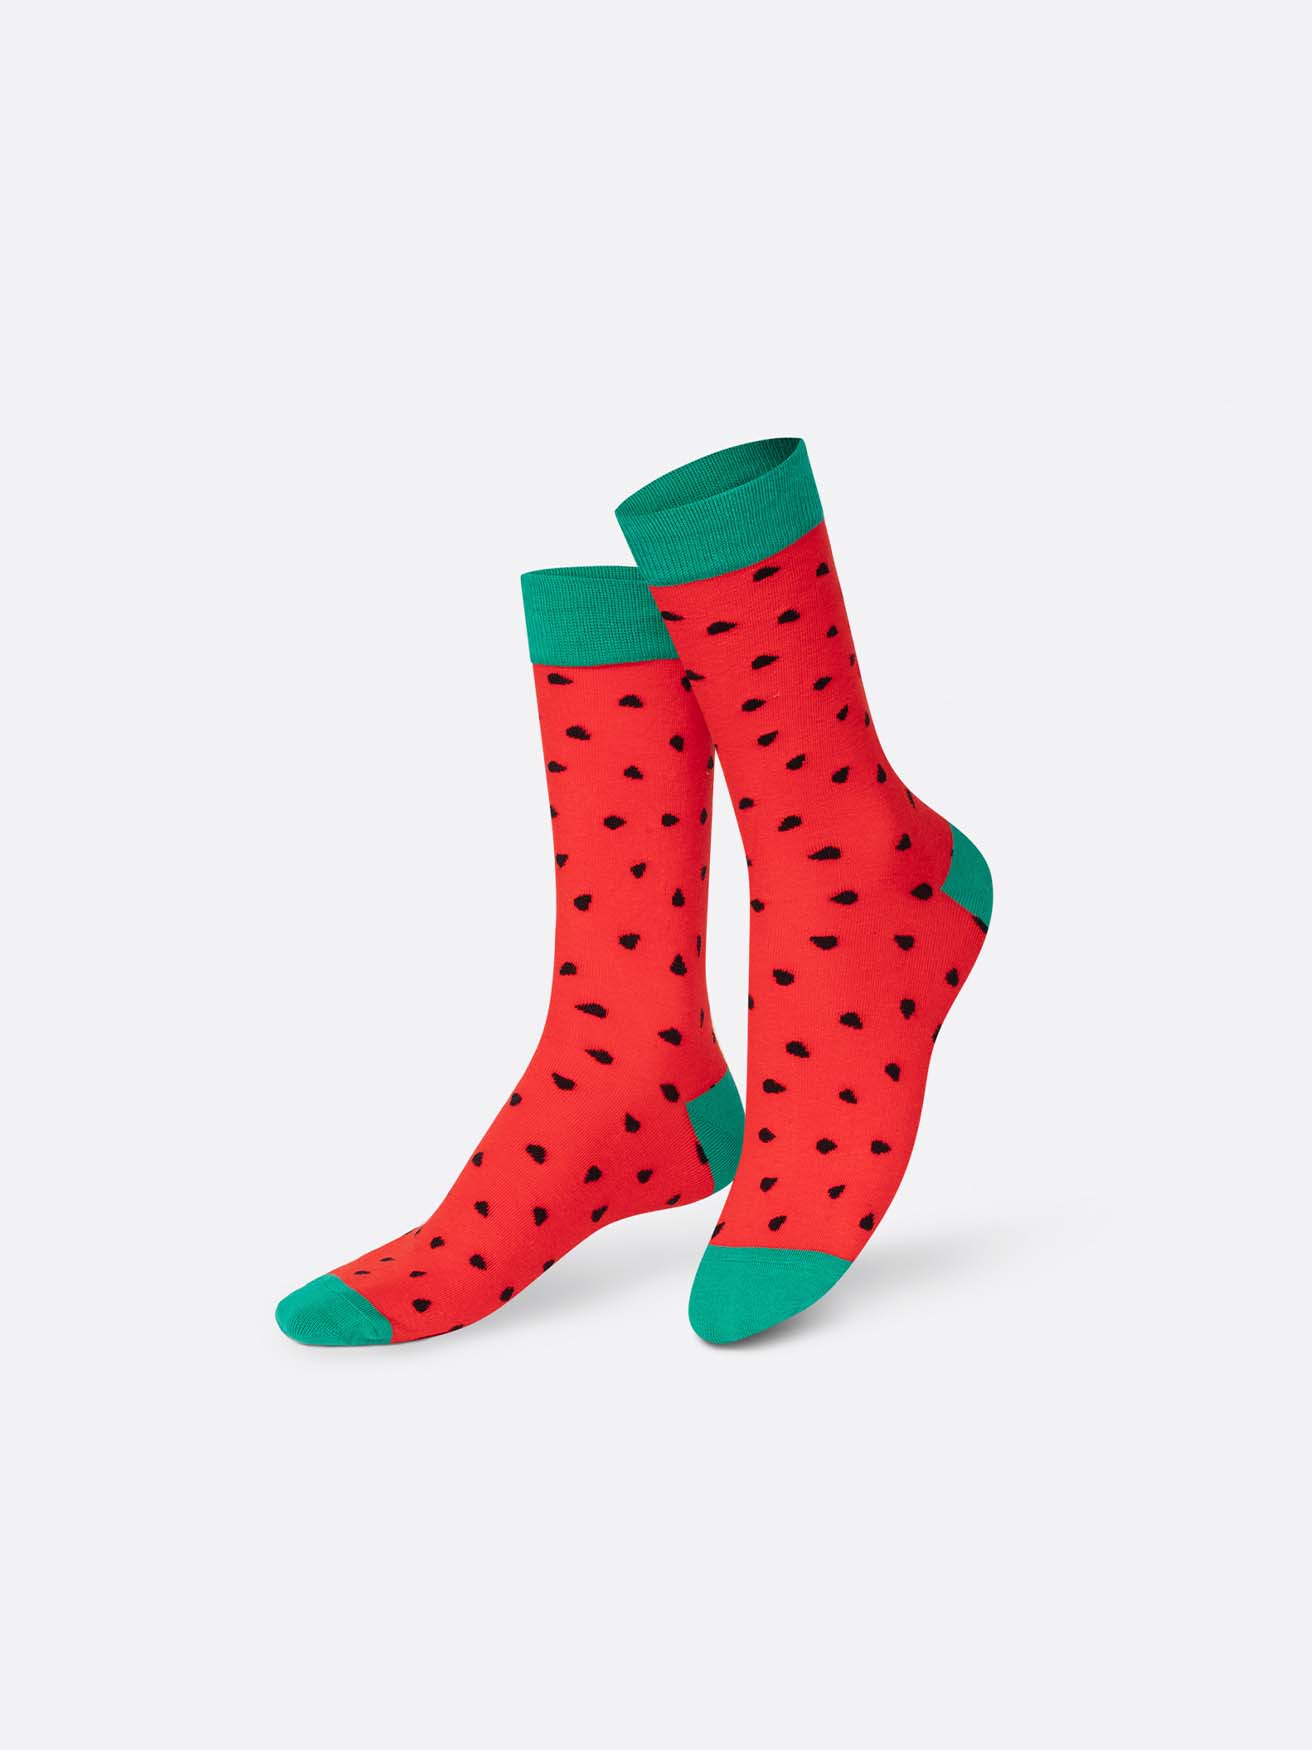 Frozen Pop Watermelon Socks